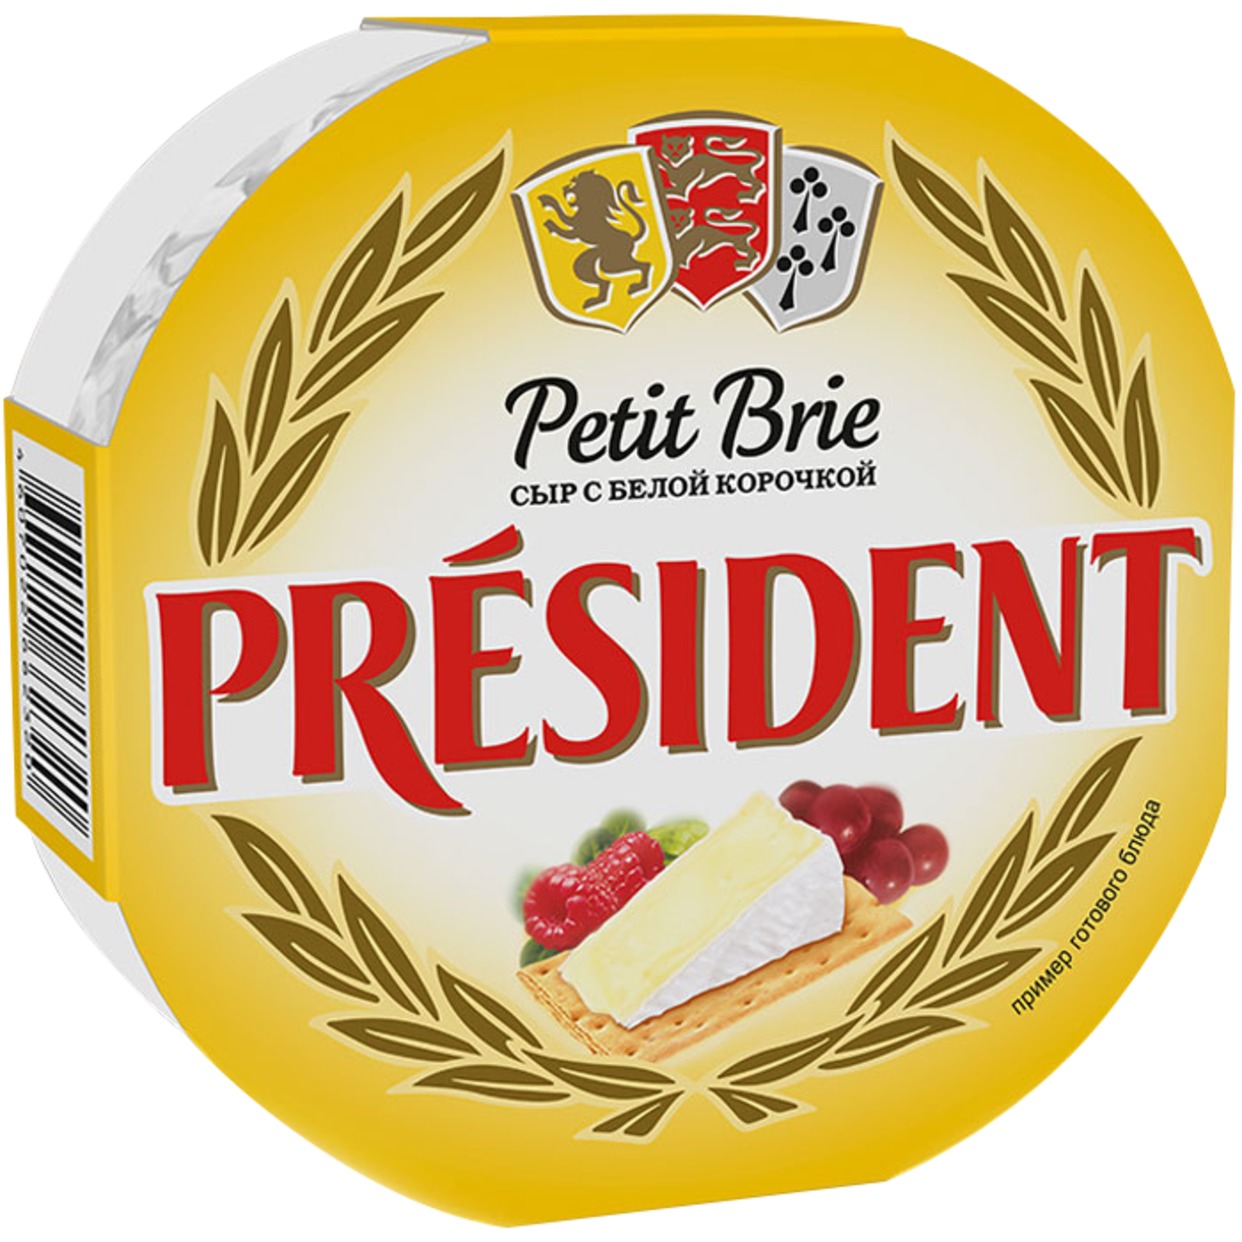 Сыр Petit Brie, мягкий с белой плесенью, President, 125 г